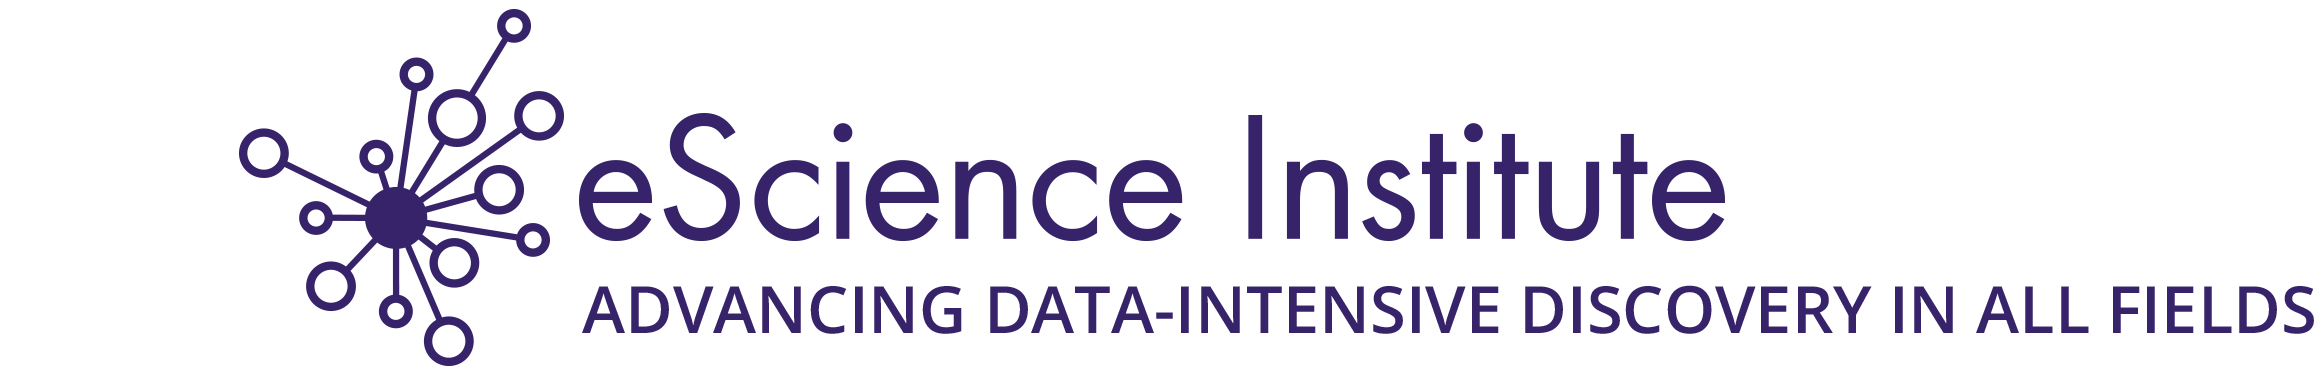 Logo for eScience Institute